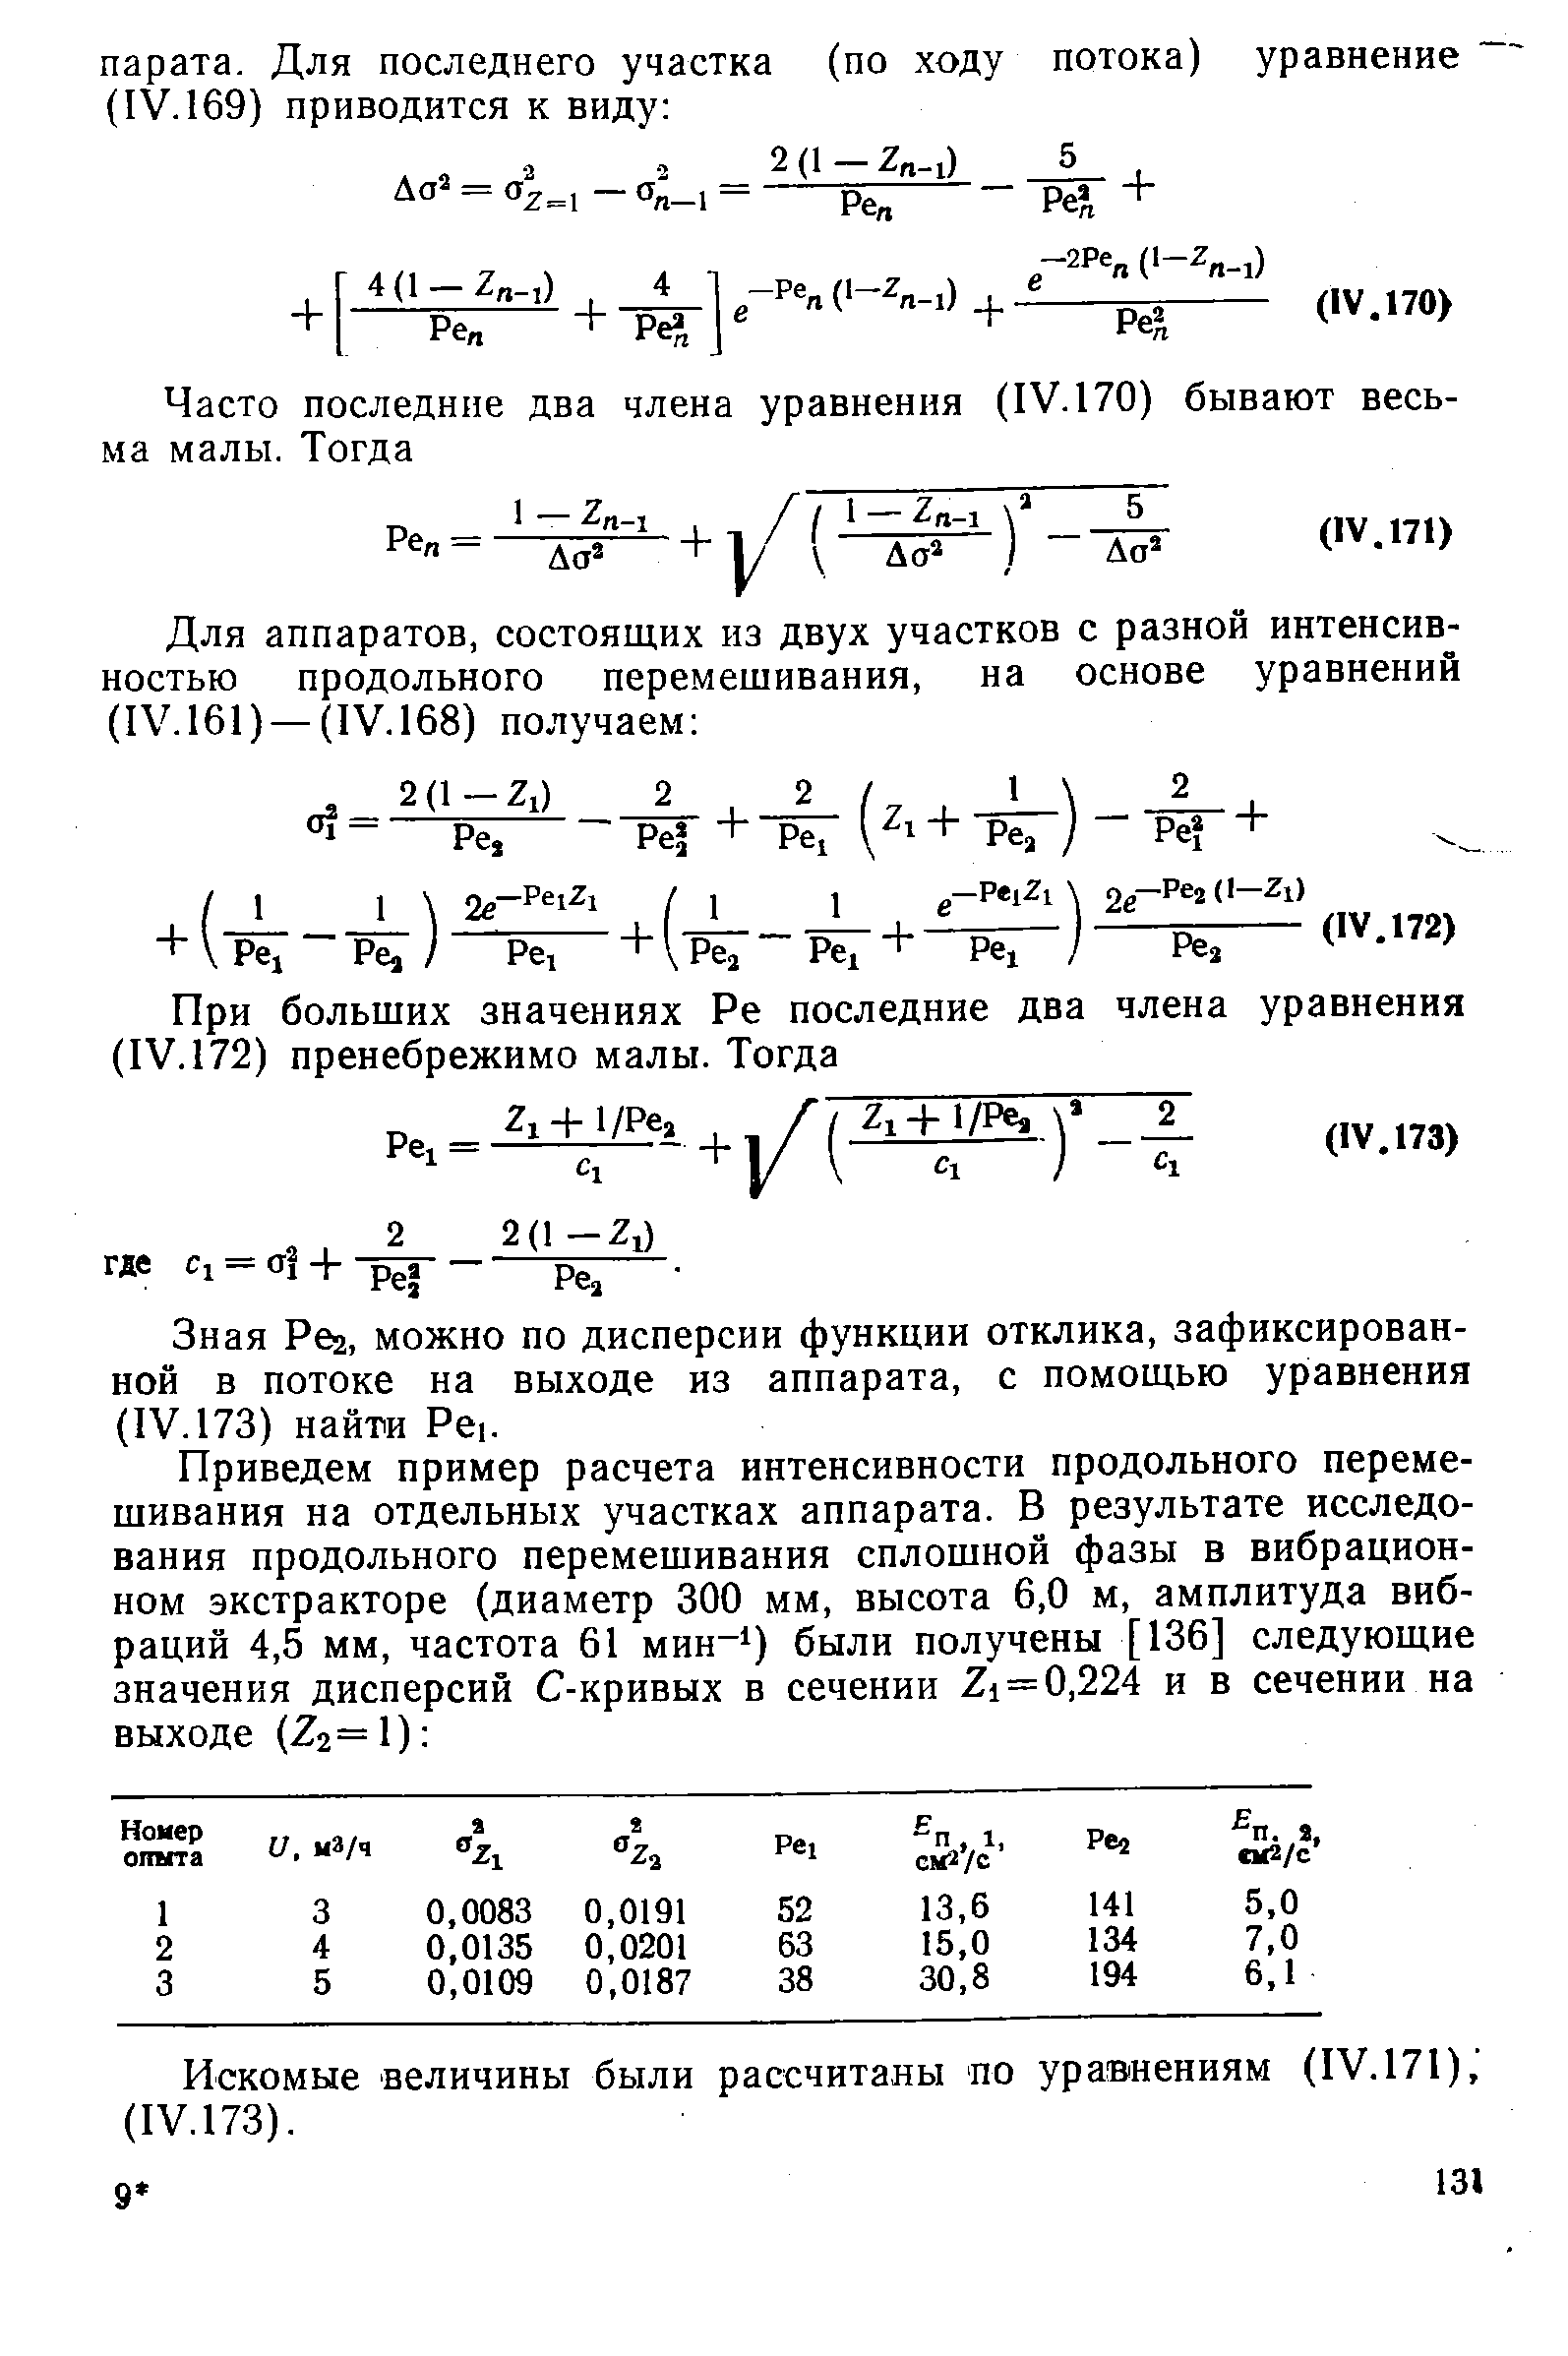 Зная Реа, можно по дисперсии функции отклика, зафиксированной в потоке на выходе из аппарата, с помощью уравнения (IV. 173) найти Рс1.